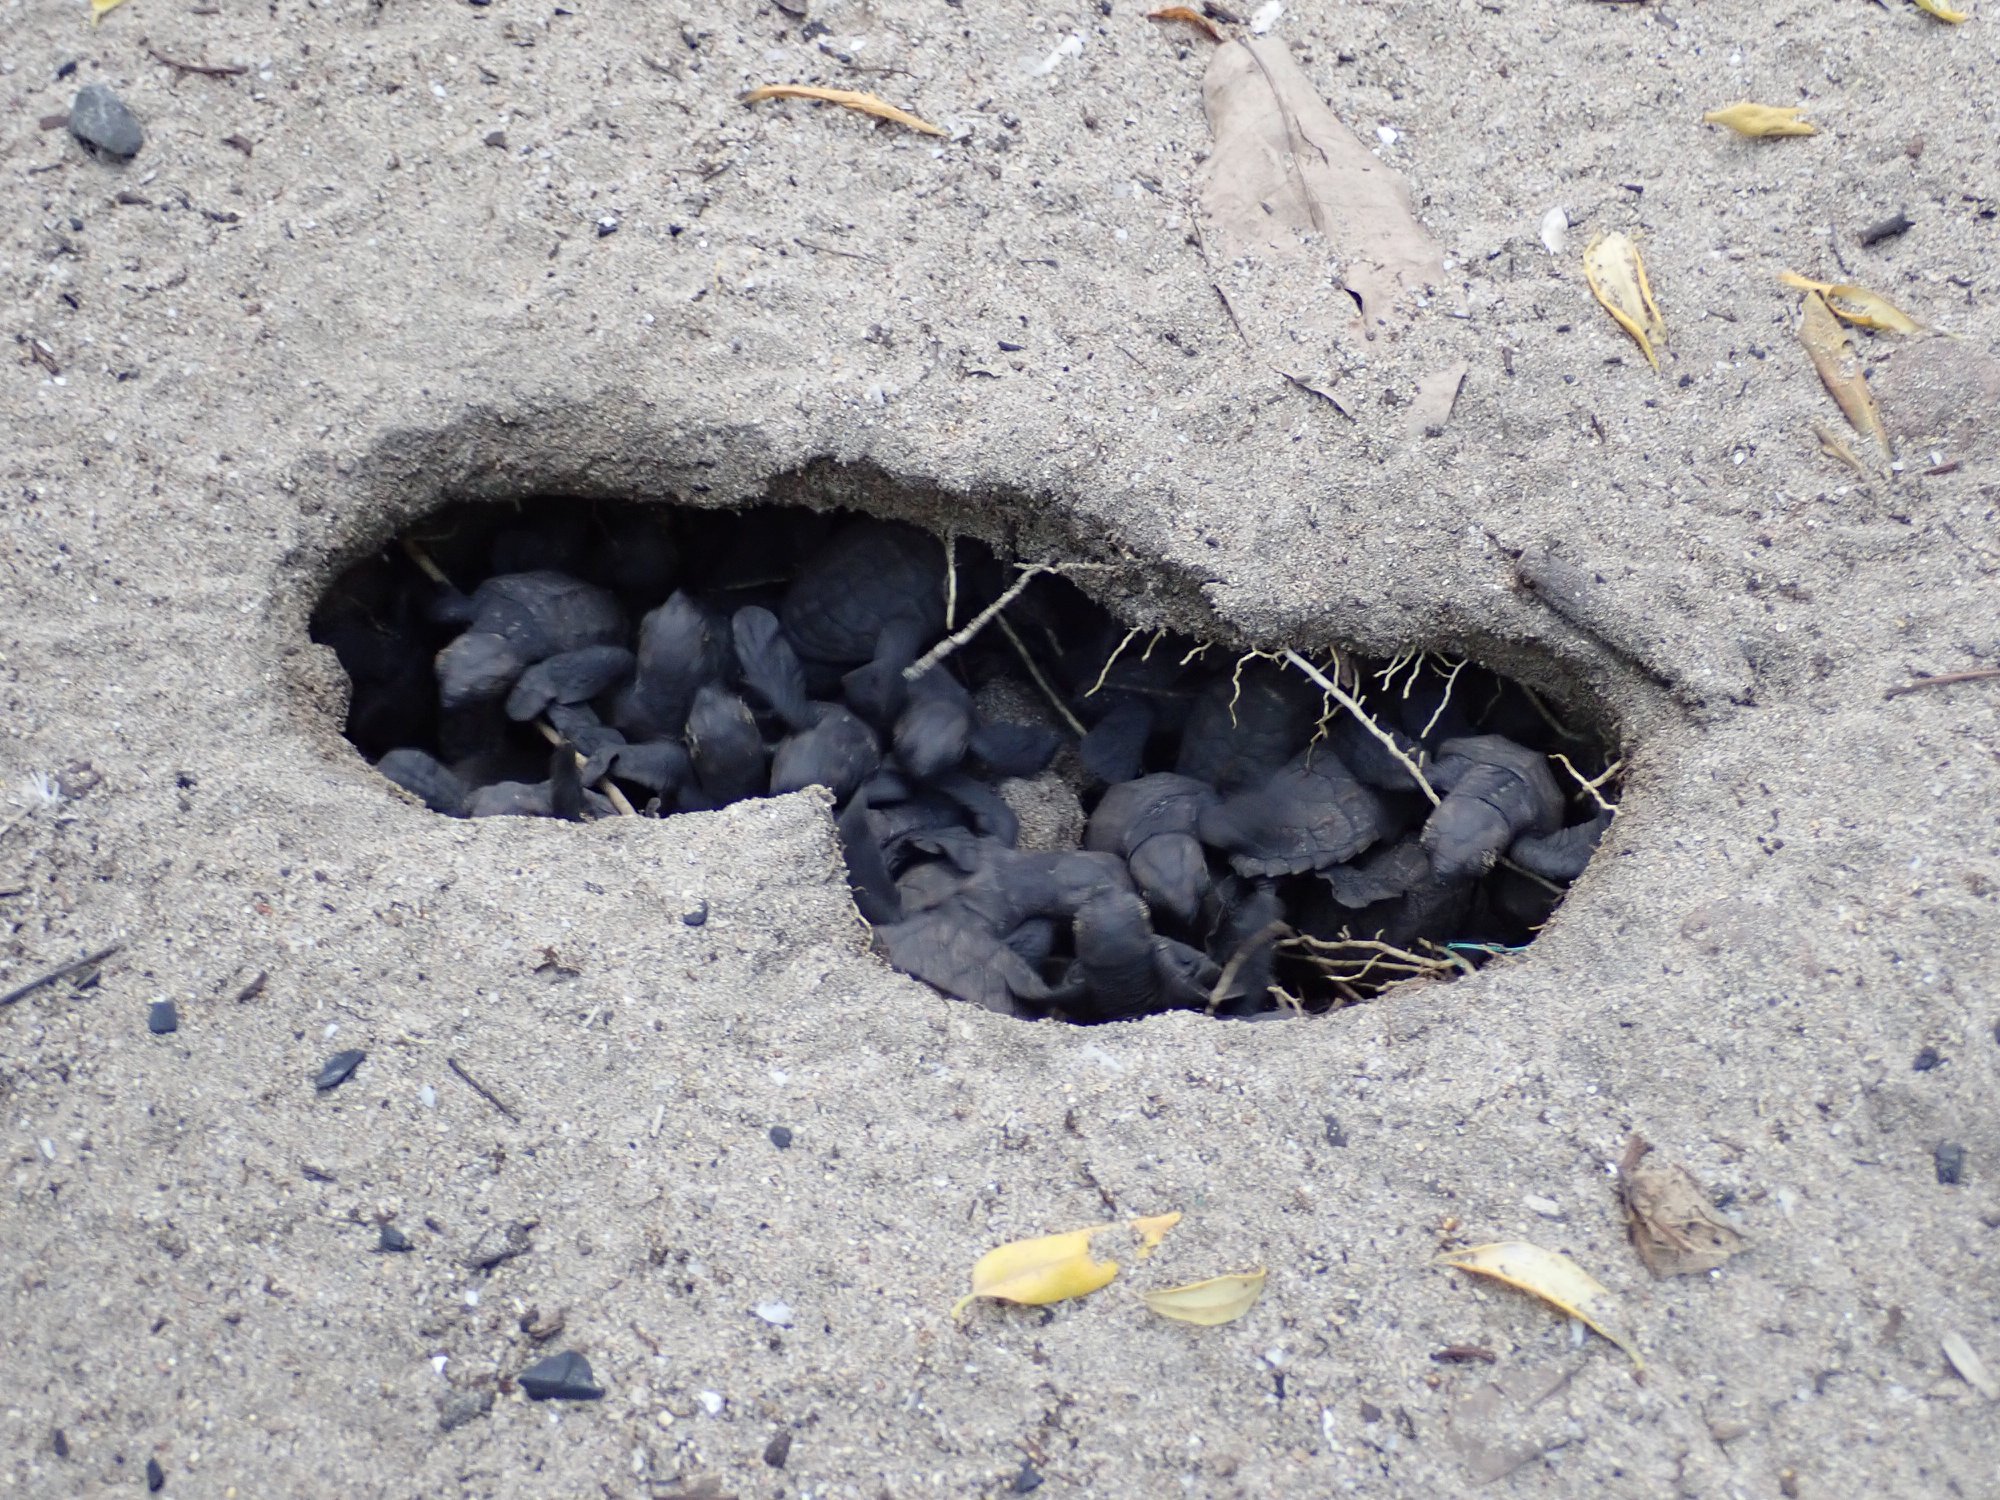     Comment observer l'éclosion des œufs de tortues sans perturber les nouveaux nés ?

